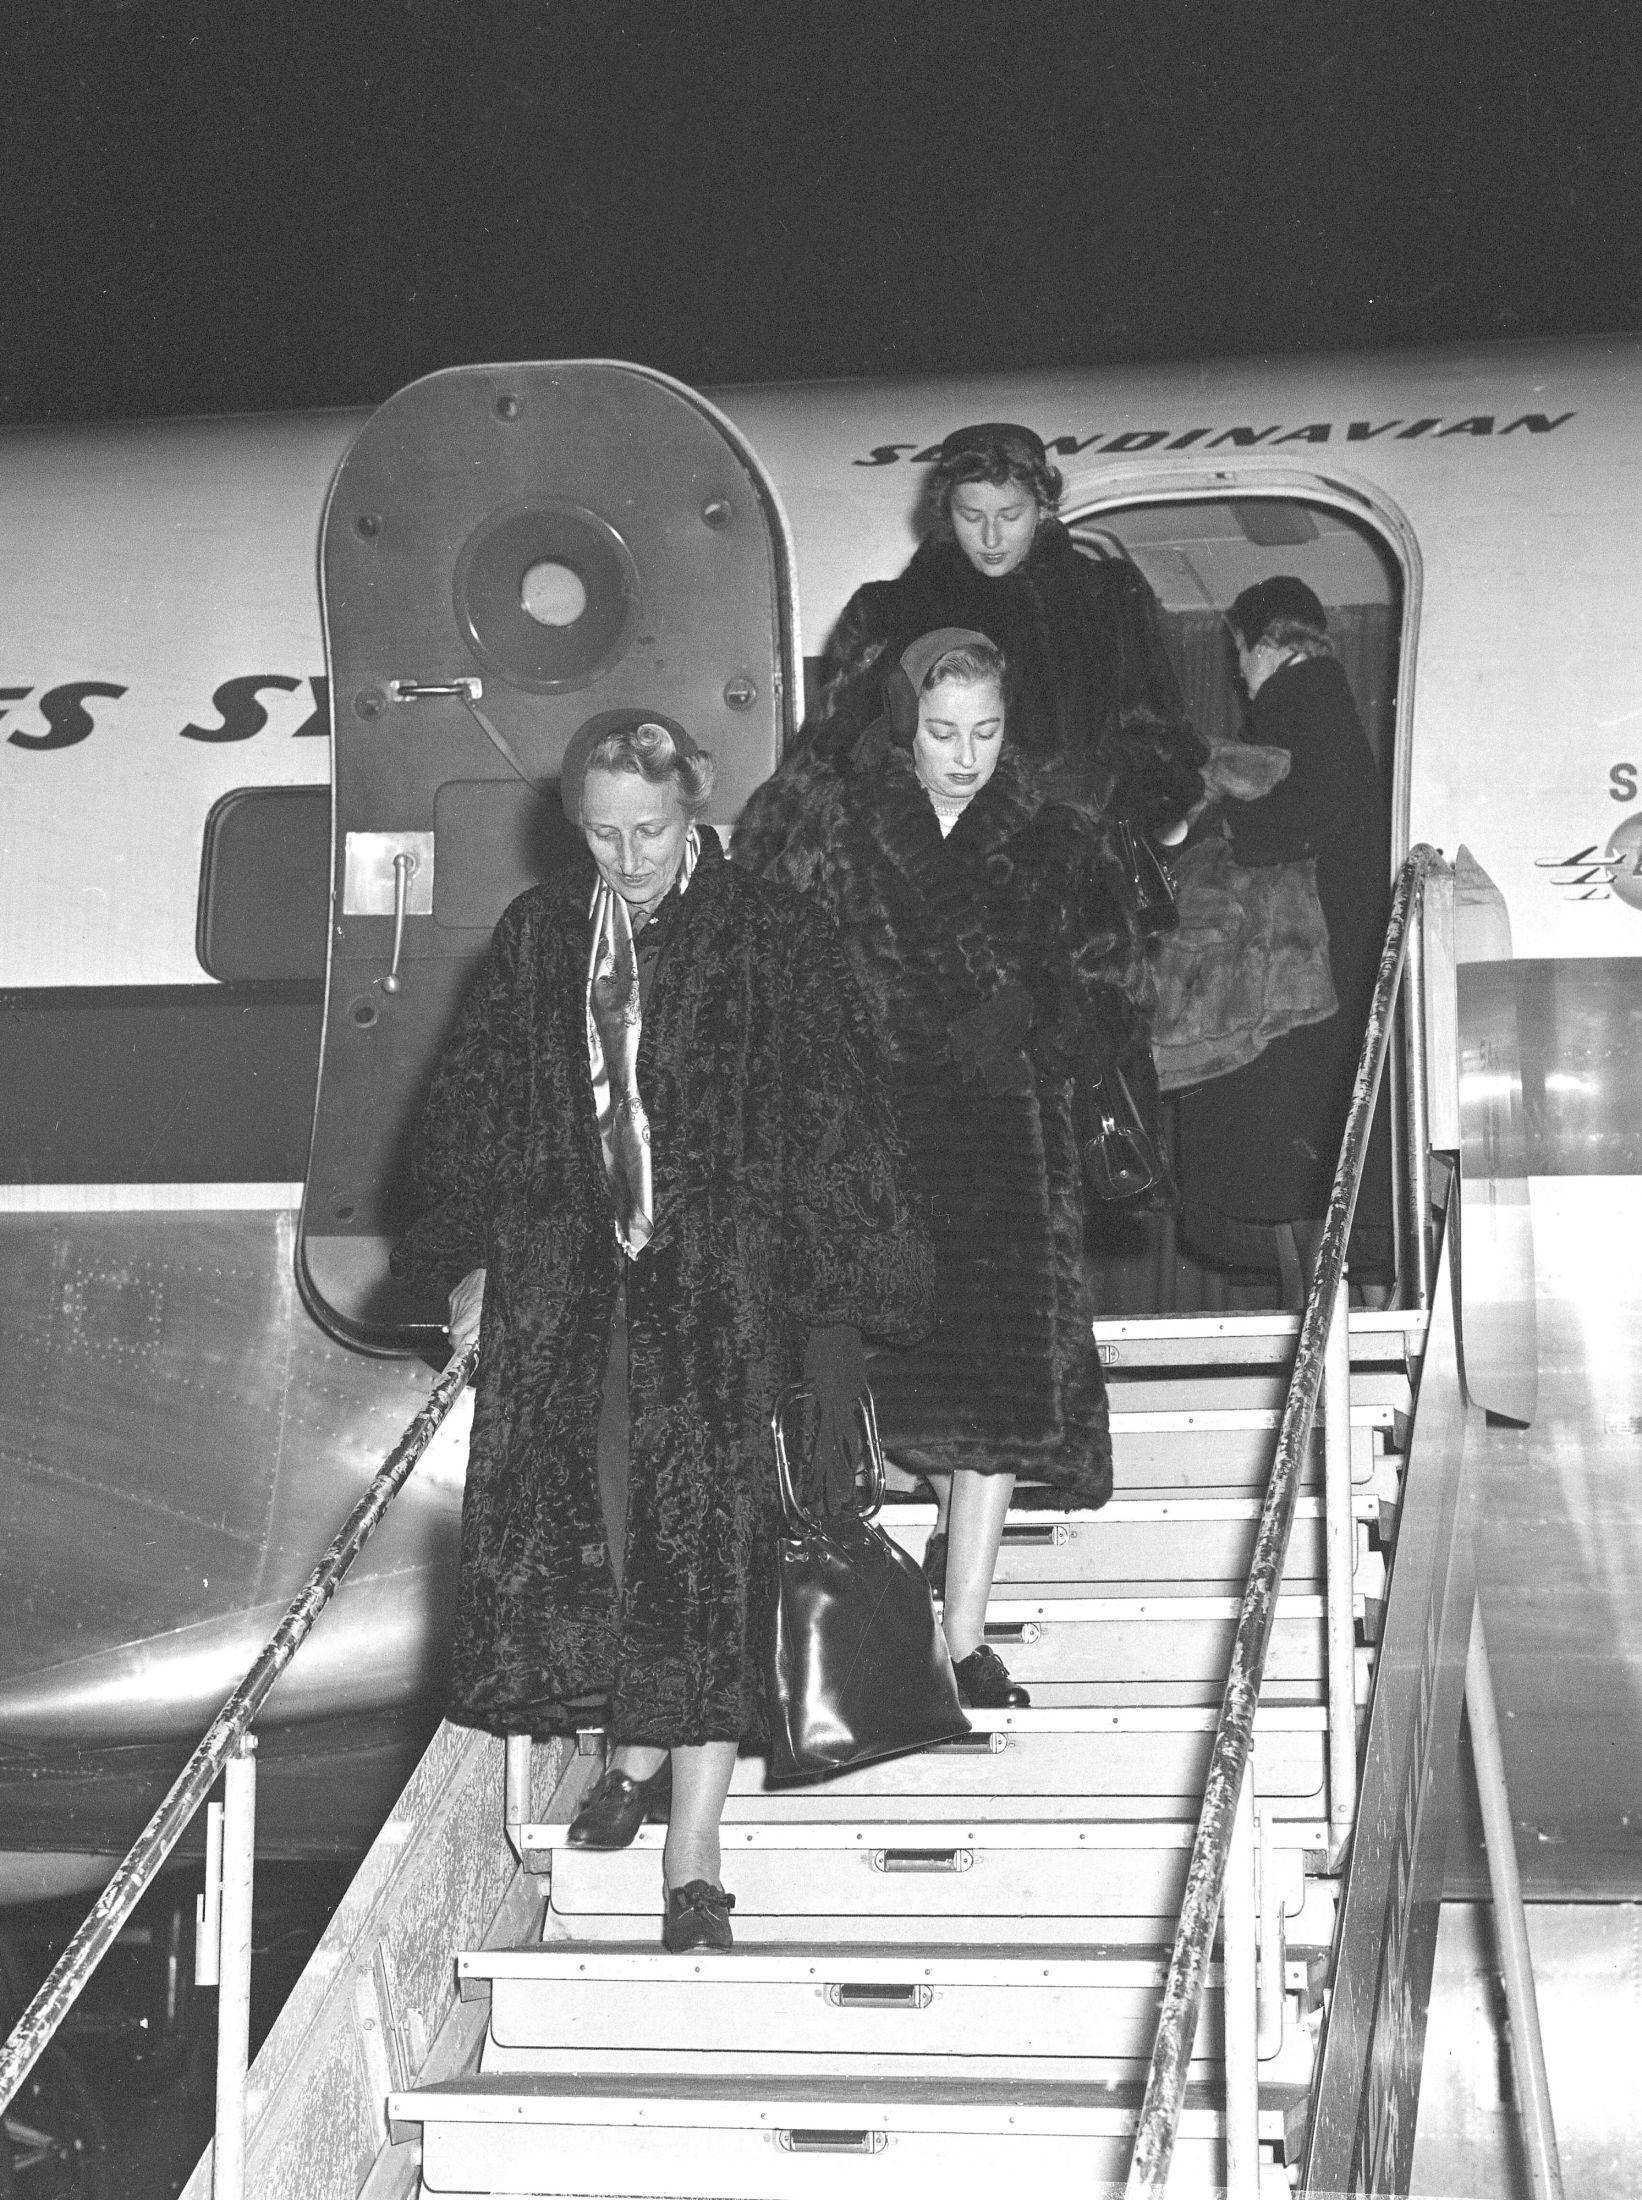 Ikke noe kosedress på flyet i 1953, nei. Kronprinsesse Märtha, prinsesse Astrid og prinsesse Ragnhild kommer til Gardermoen iført pelskåper. Foto: NTB arkiv / NTB